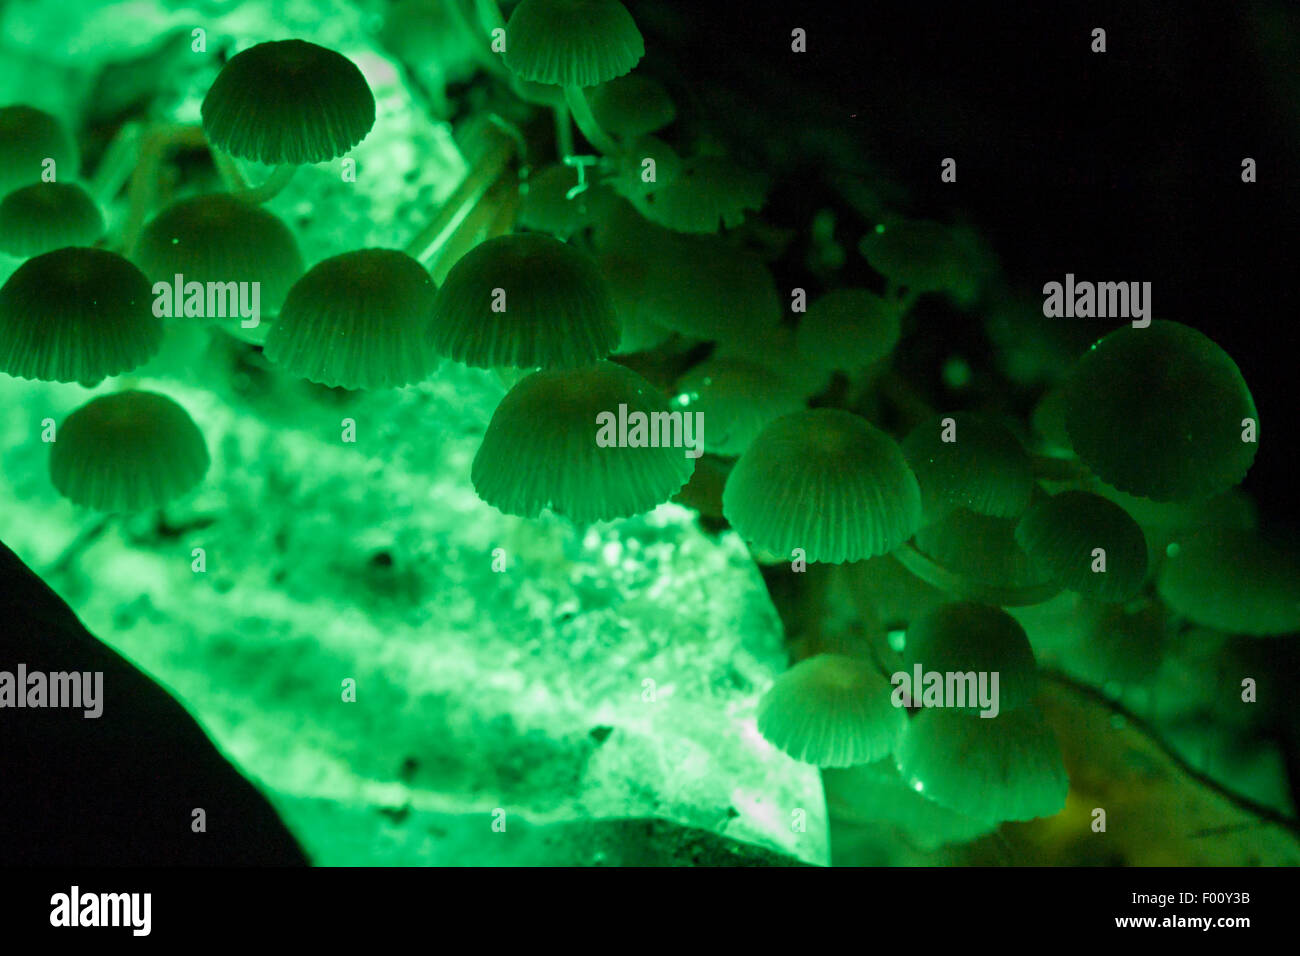 Hongo bioluminiscente en acción